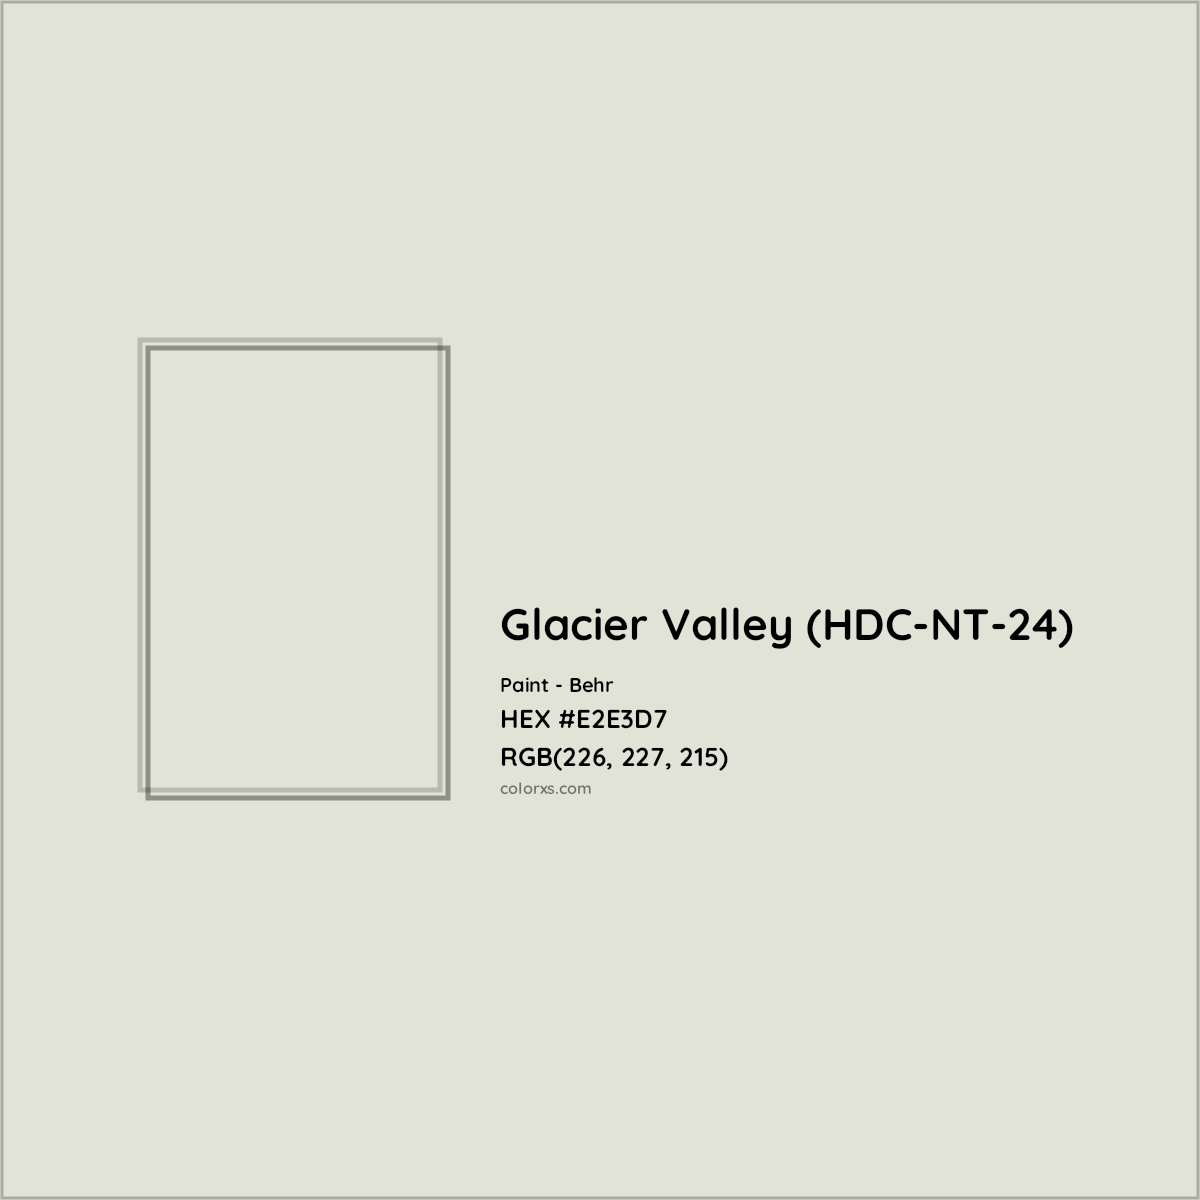 HEX #E2E3D7 Glacier Valley (HDC-NT-24) Paint Behr - Color Code